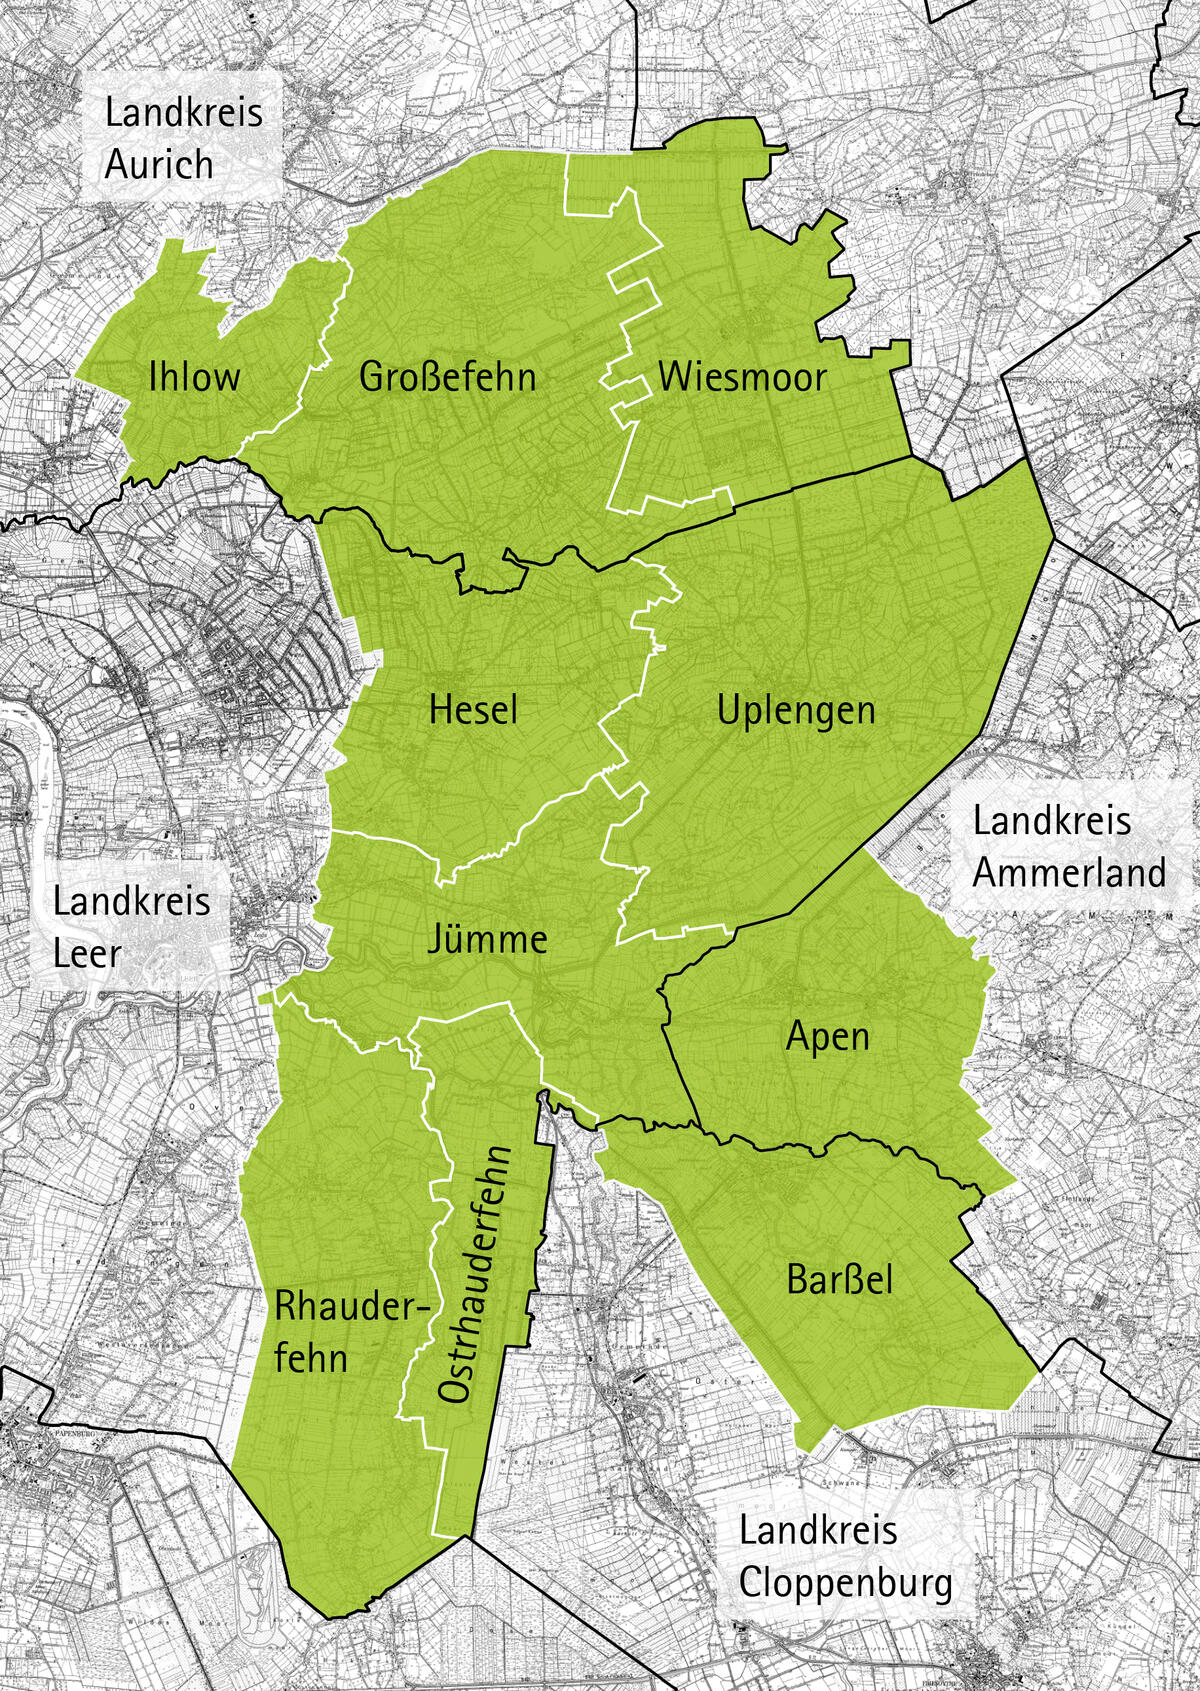 Karte der LEADER-Region Fehngebiet mit den Mitgliedskommunen Ihlow, Großefehn, Wiesmoor, Hesel, Uplengen, Jümme, Rhauderfehn, Ostrhauderfehn, Apen und Barßel.